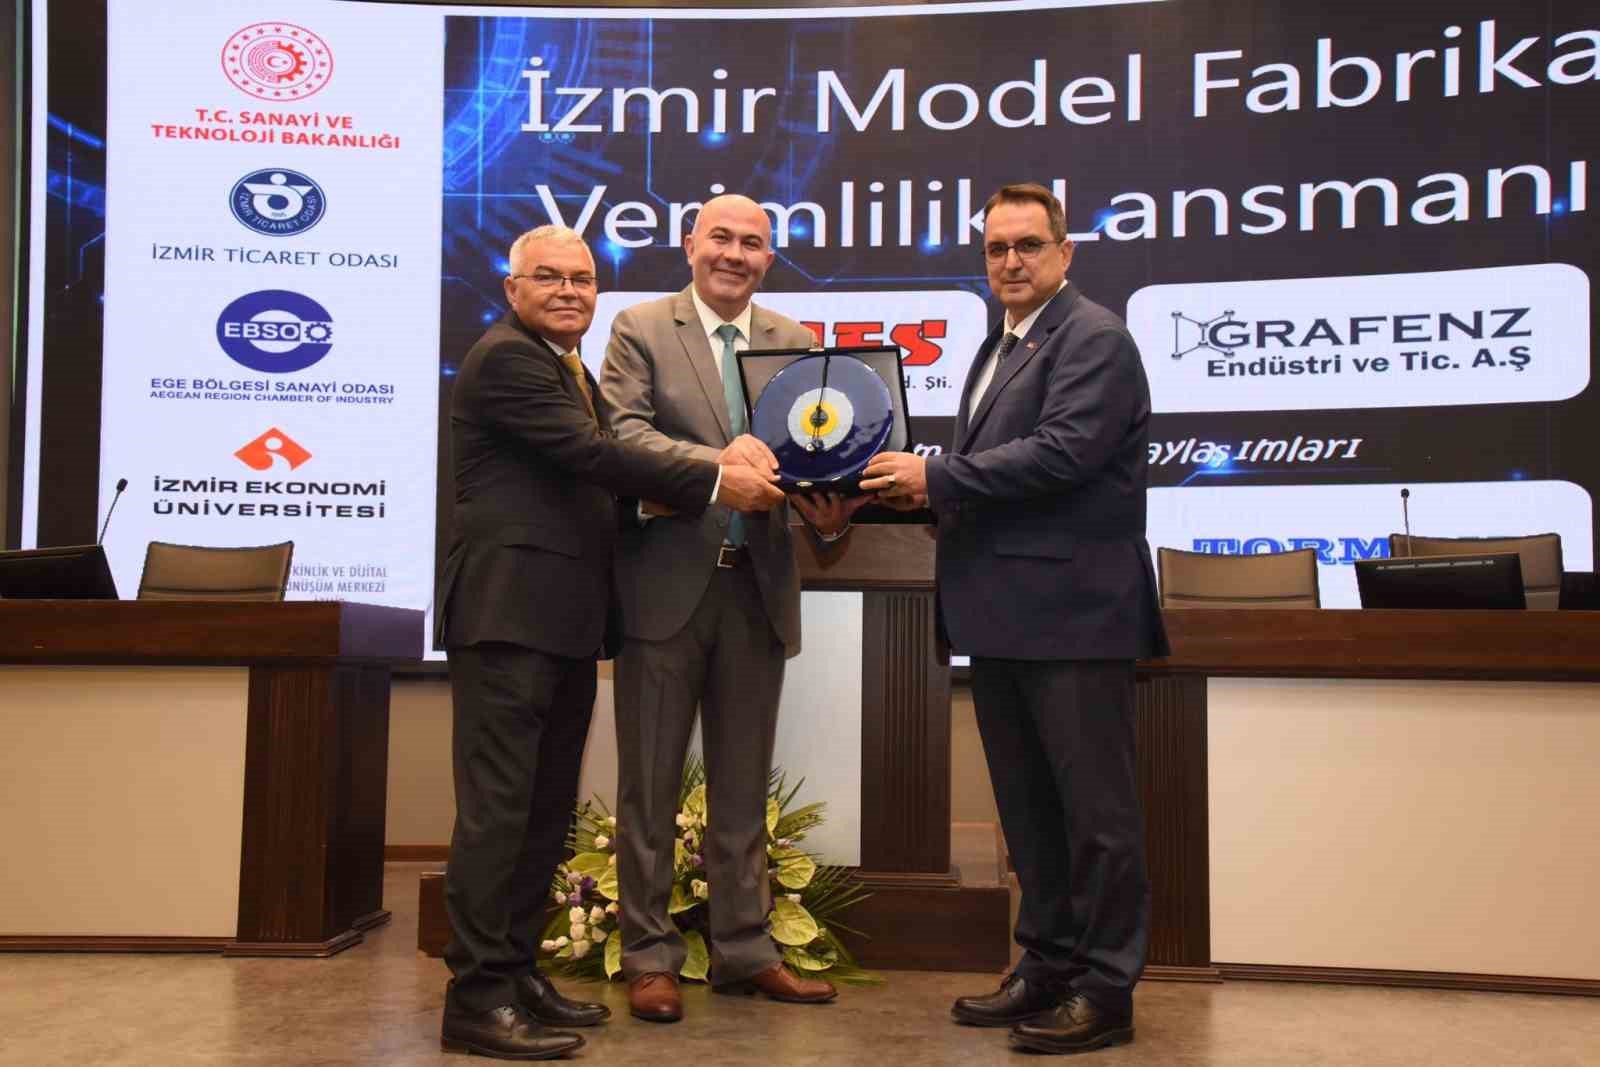 İzmir Model Fabrika’dan “Verimlilik” lansmanı
